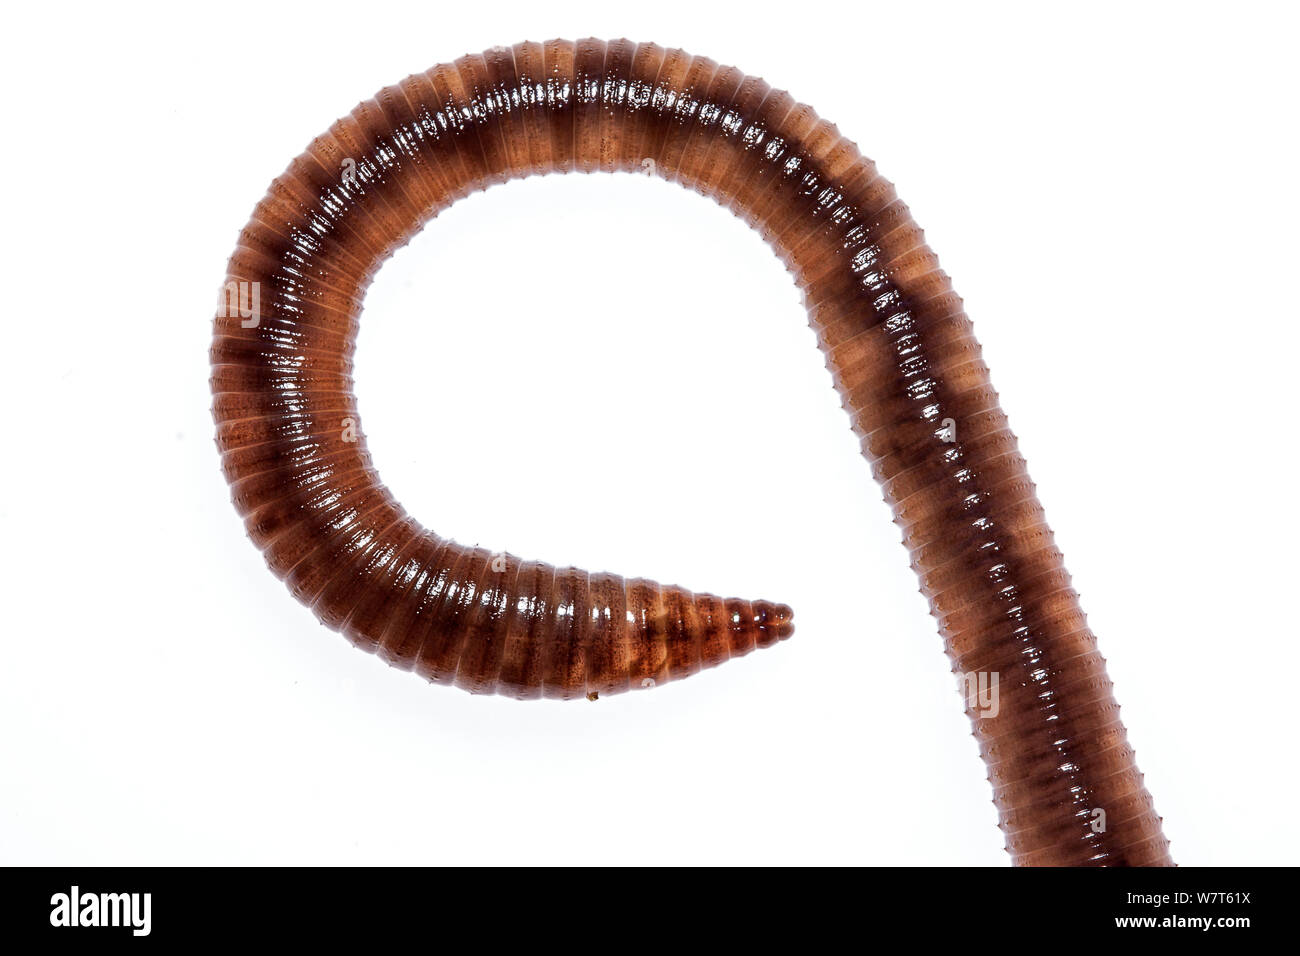 Common earthworm (Lumbricus terrestris) Crete, Greece Meetyourneighbours.net project Stock Photo